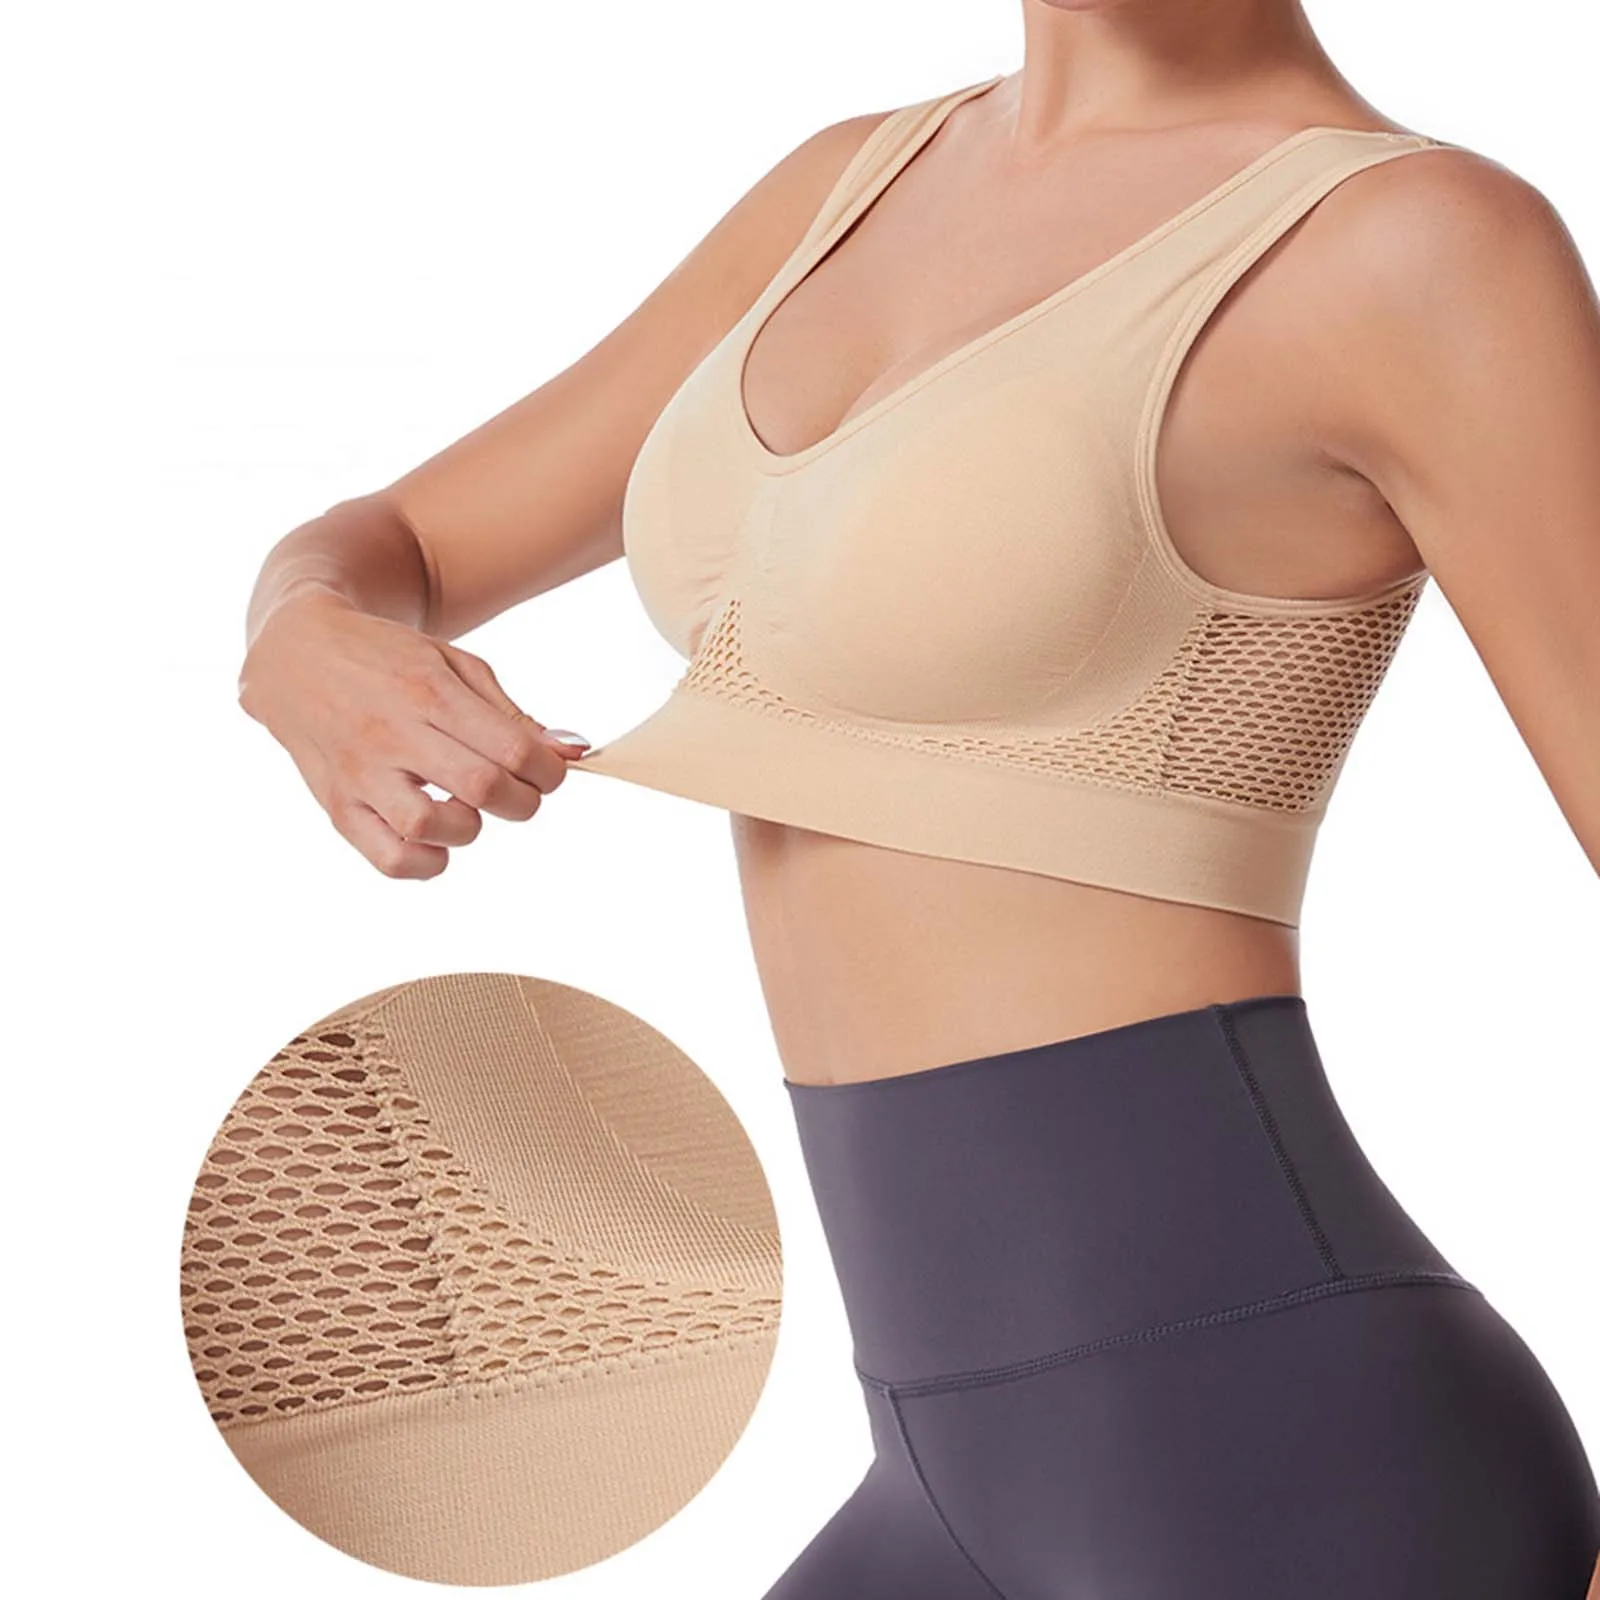 

Women Seamless Bras Shockproof Bra Fitness Gym Running Underwear Wireless 6xl Large Size Crop Top Breathable Sports Bra Intimate